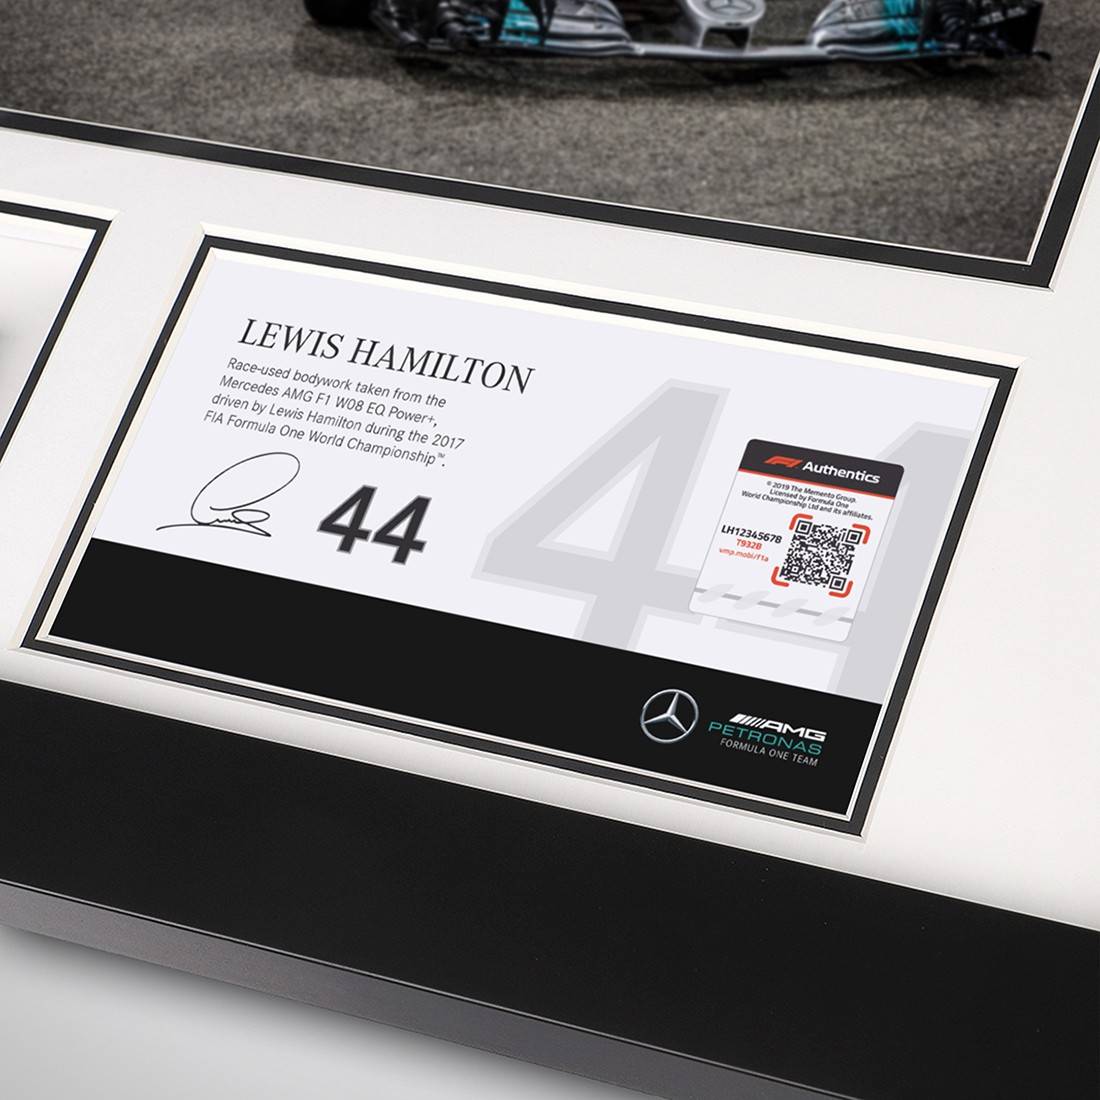 Lewis Hamilton 2017 Abu Dhabi Grand Prix Bodywork & Photo